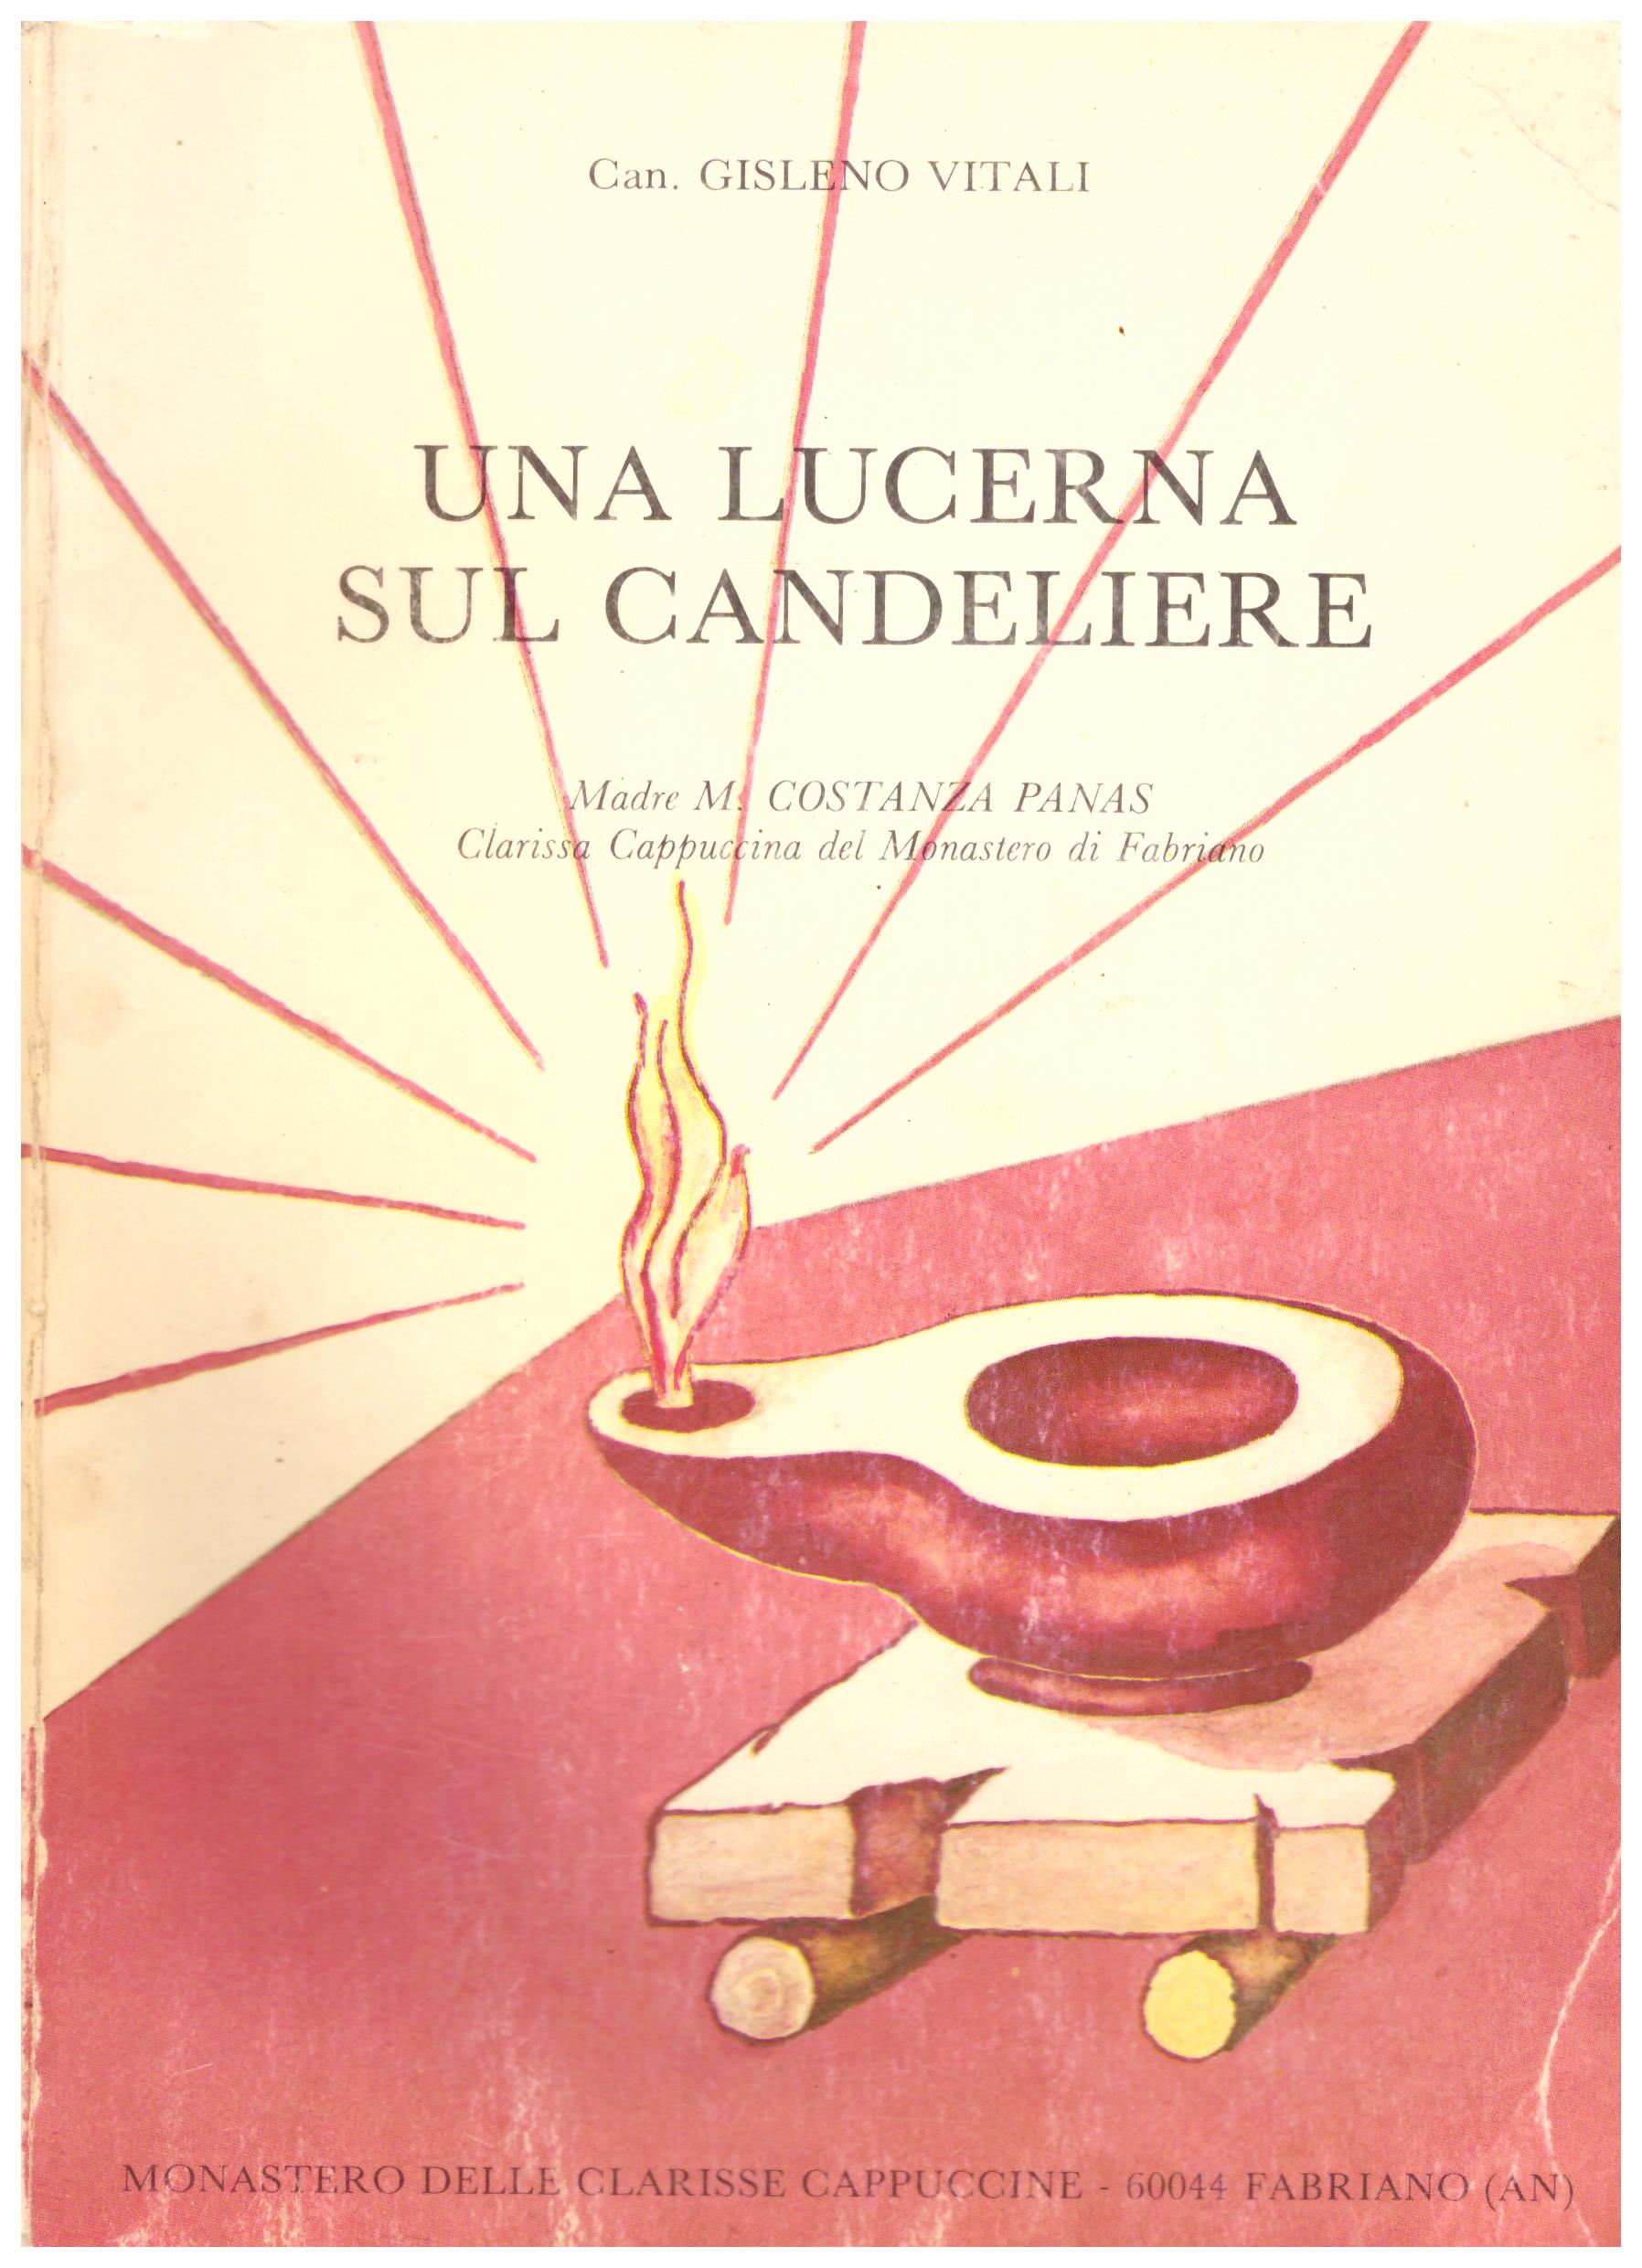 Titolo: Una lucerna sul candeliere Autore: Gisleno Vitali Editore: monastero delle clarisse cappuccine, Fabriano 1980